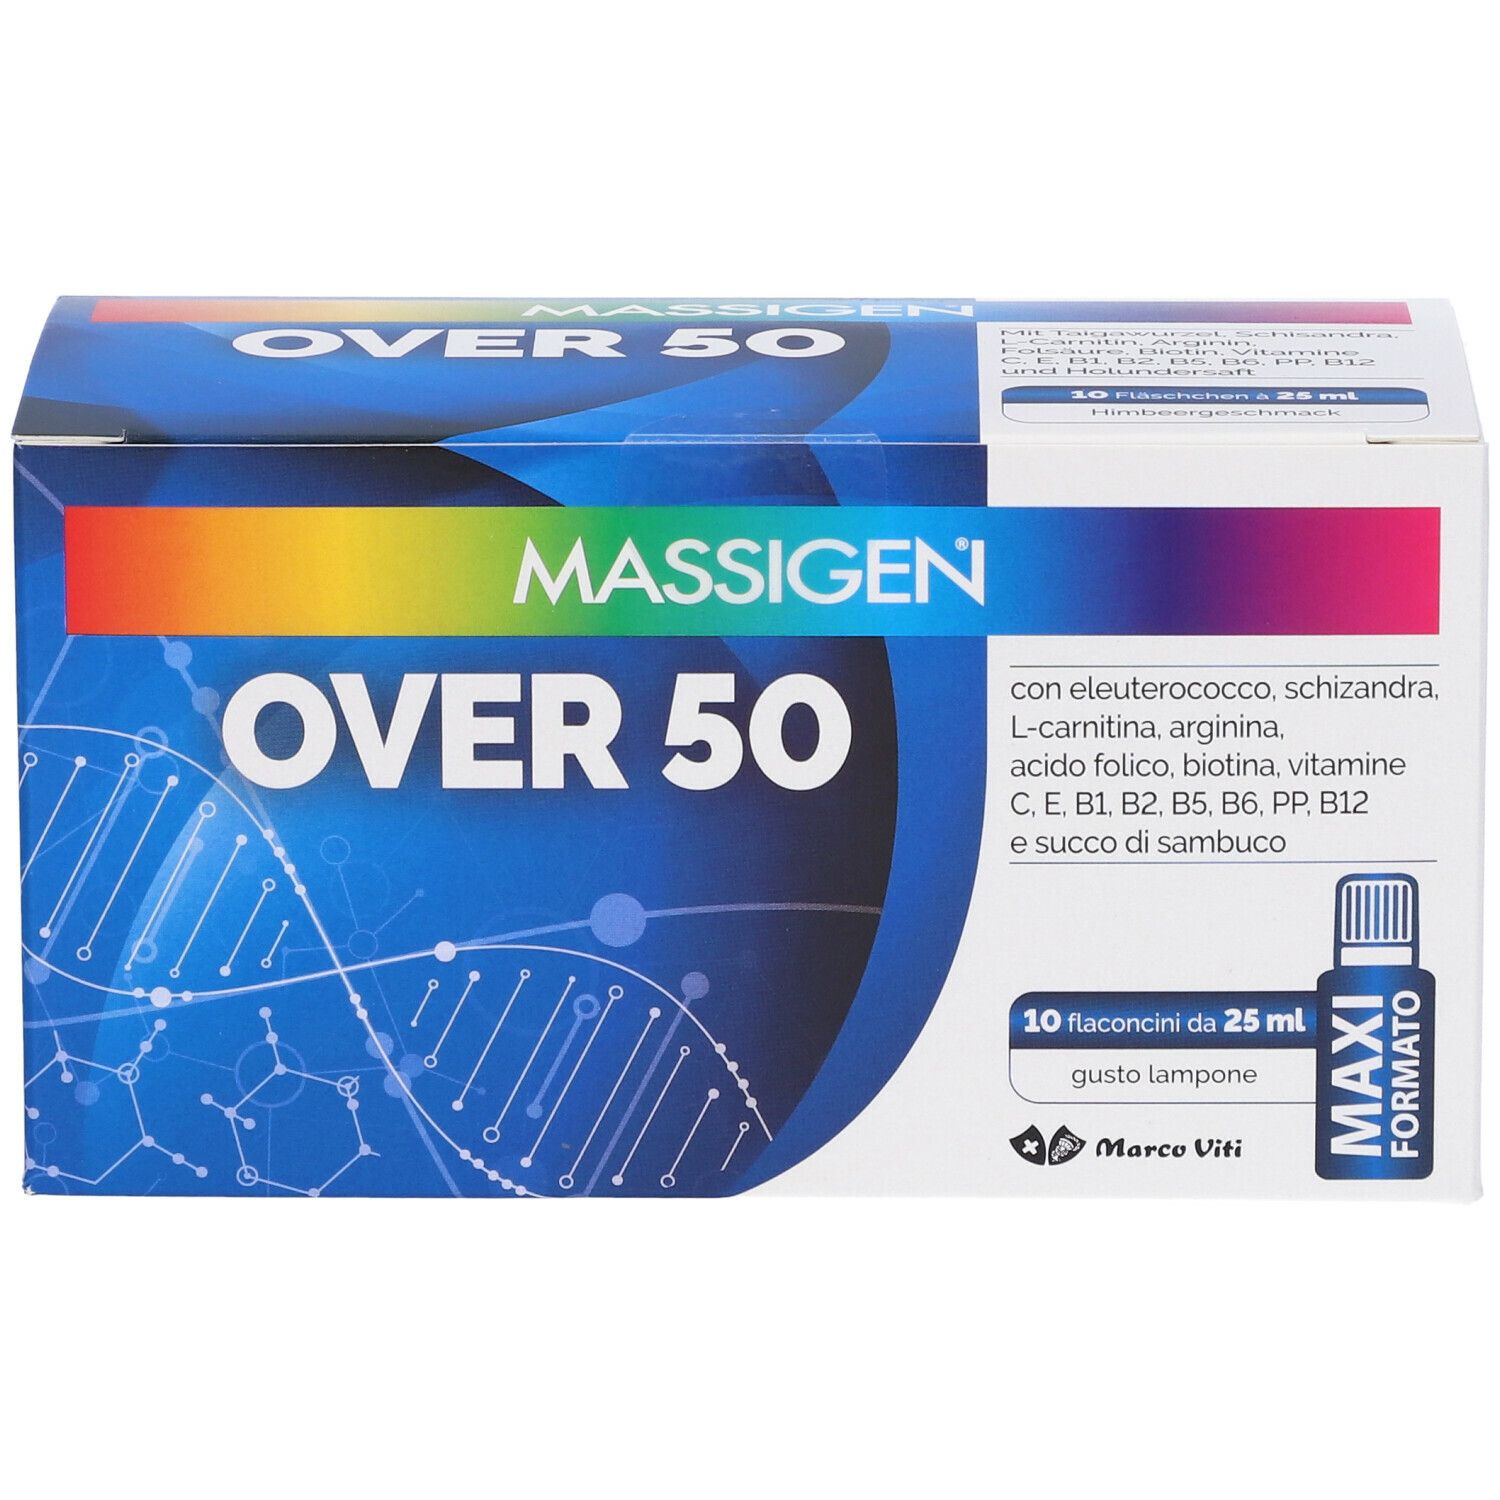 MASSIGEN® Over 50